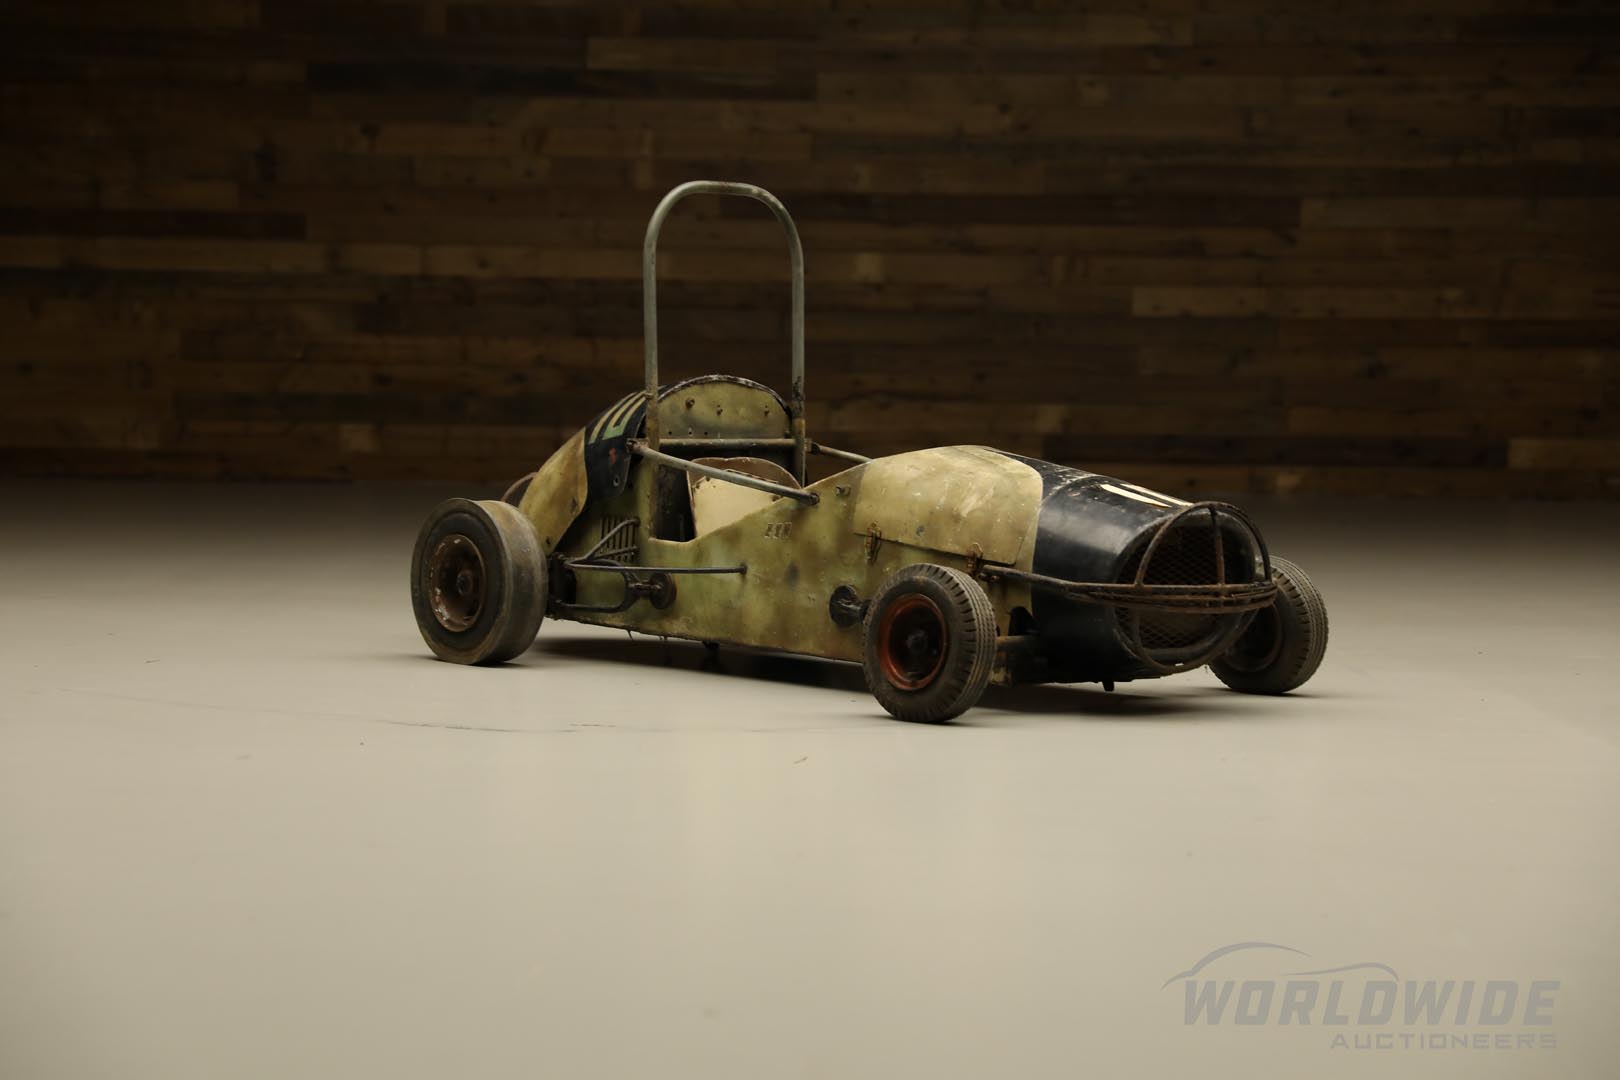  1960 Midget Racing Go-Kart  